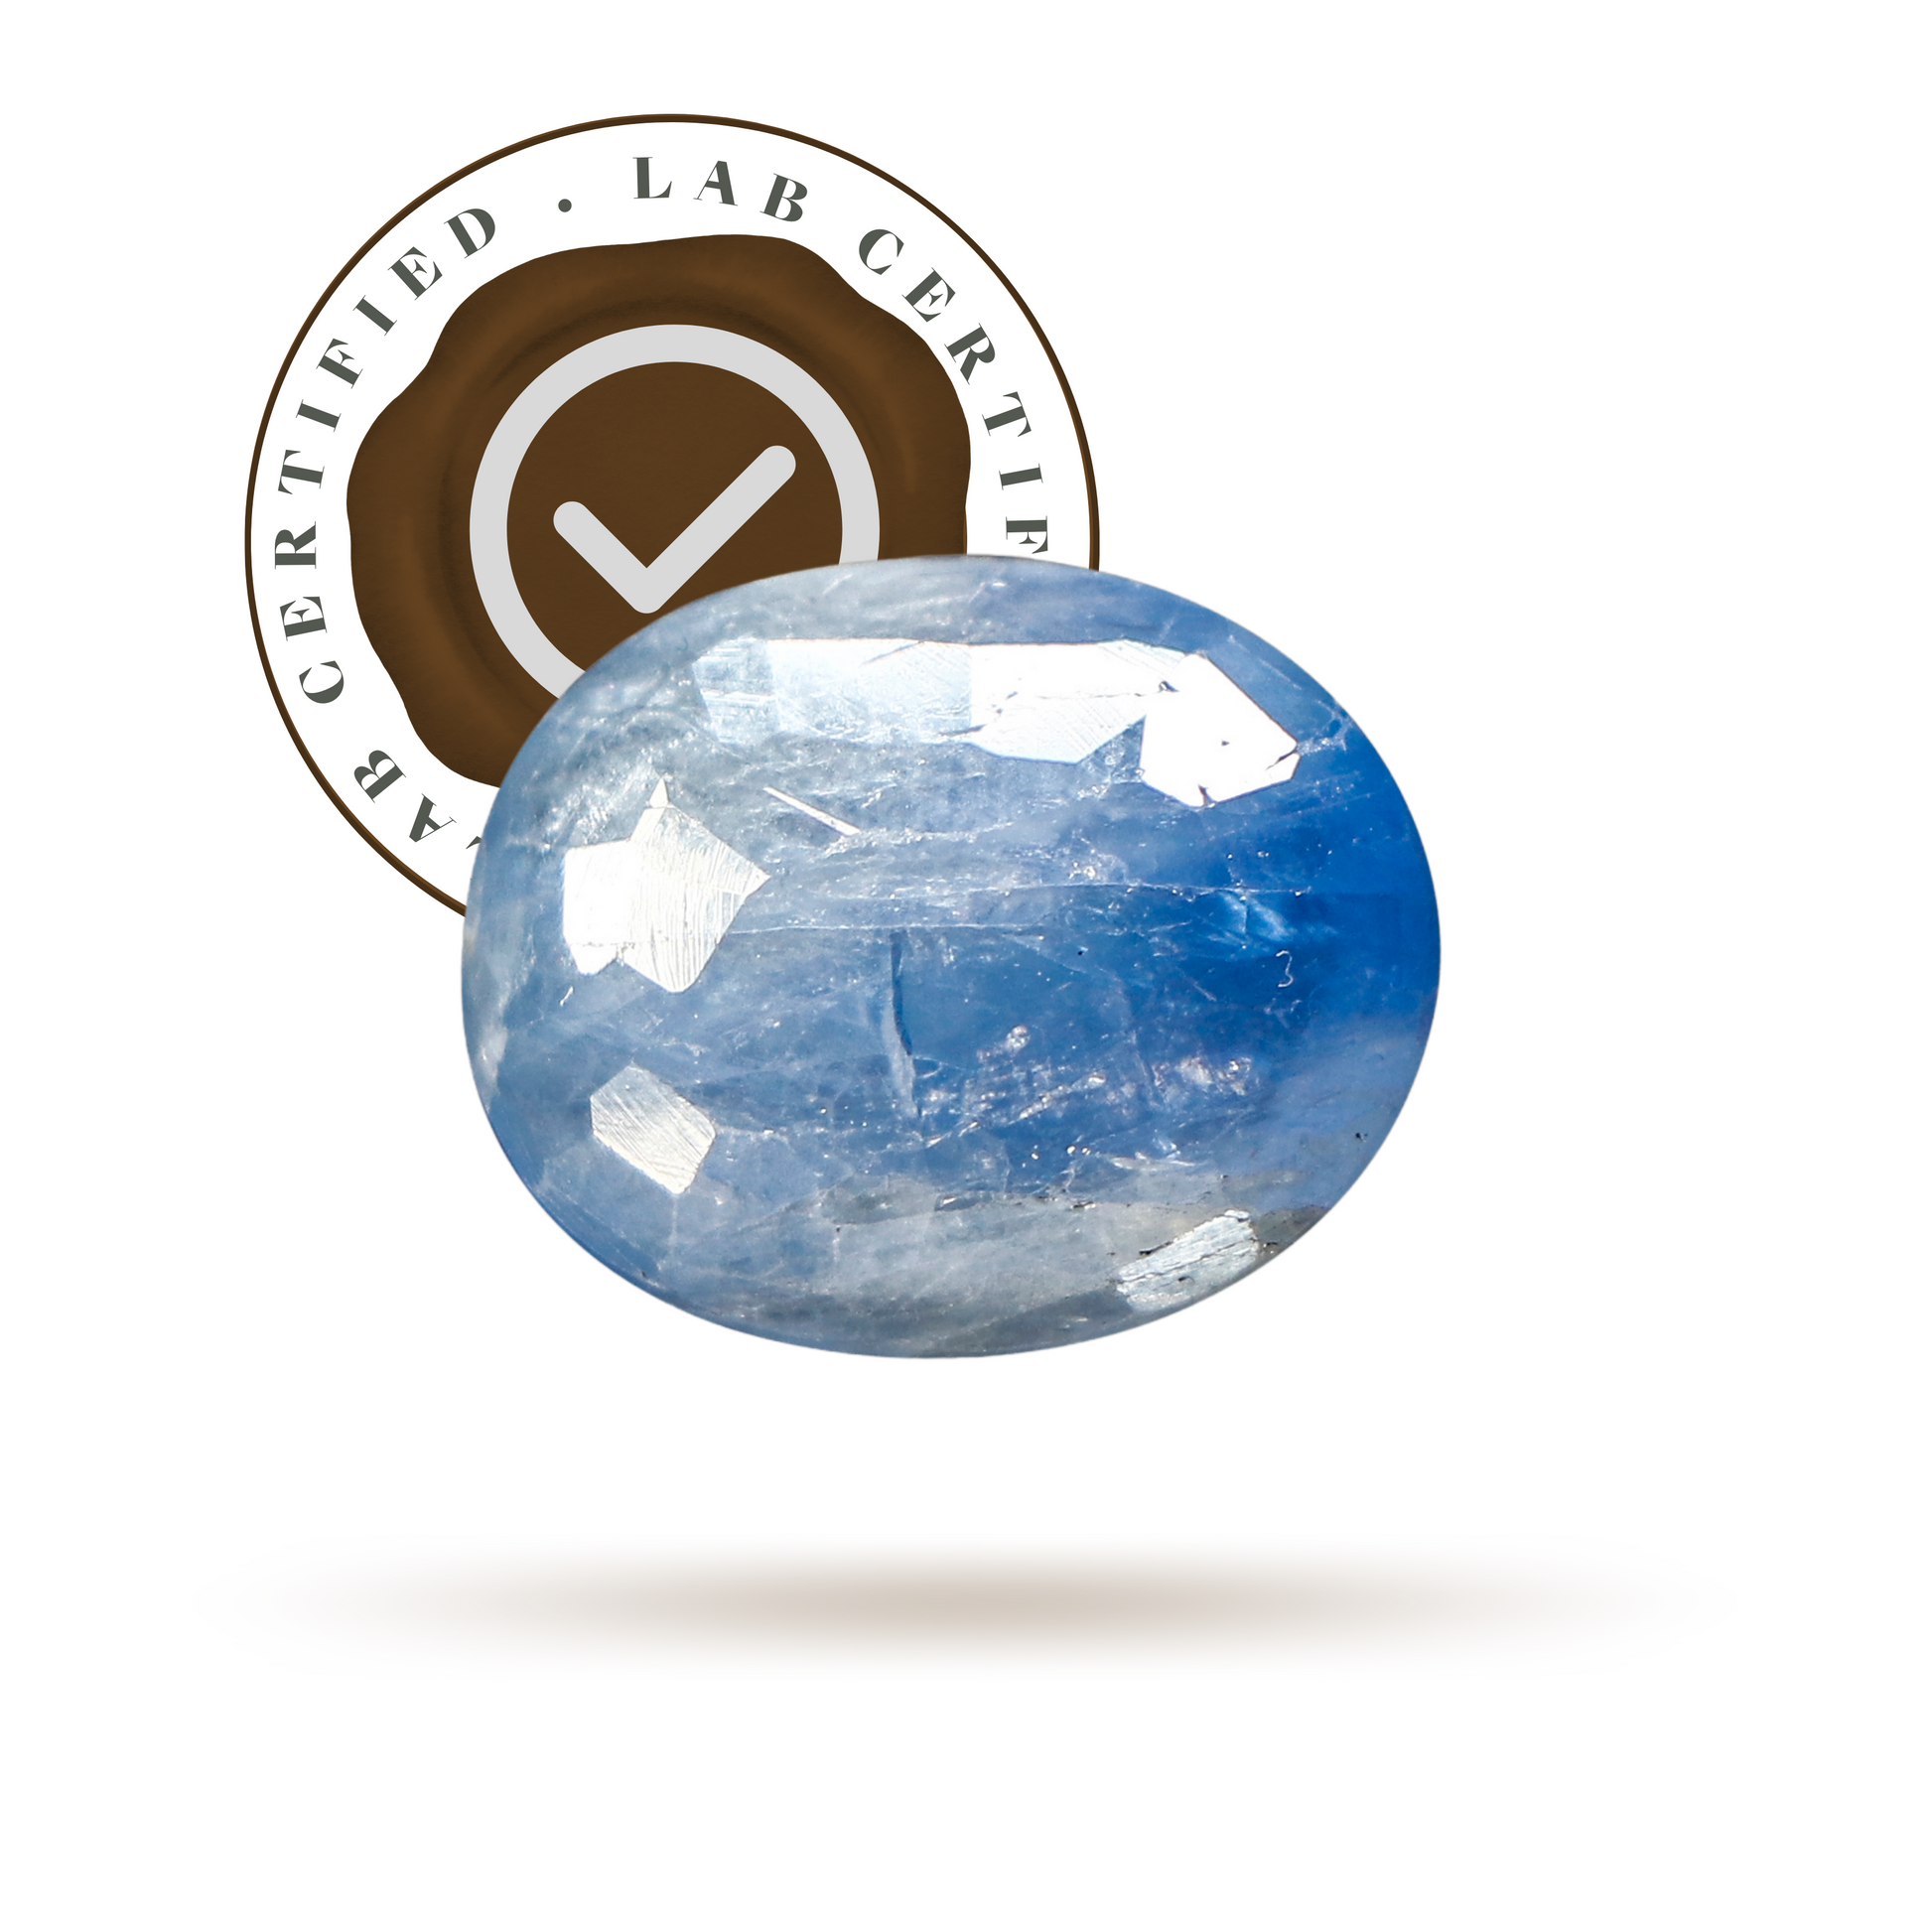 Blue sapphire ( 9 Ratti )-Gemsmantra-best-online-gems-shop-in-india